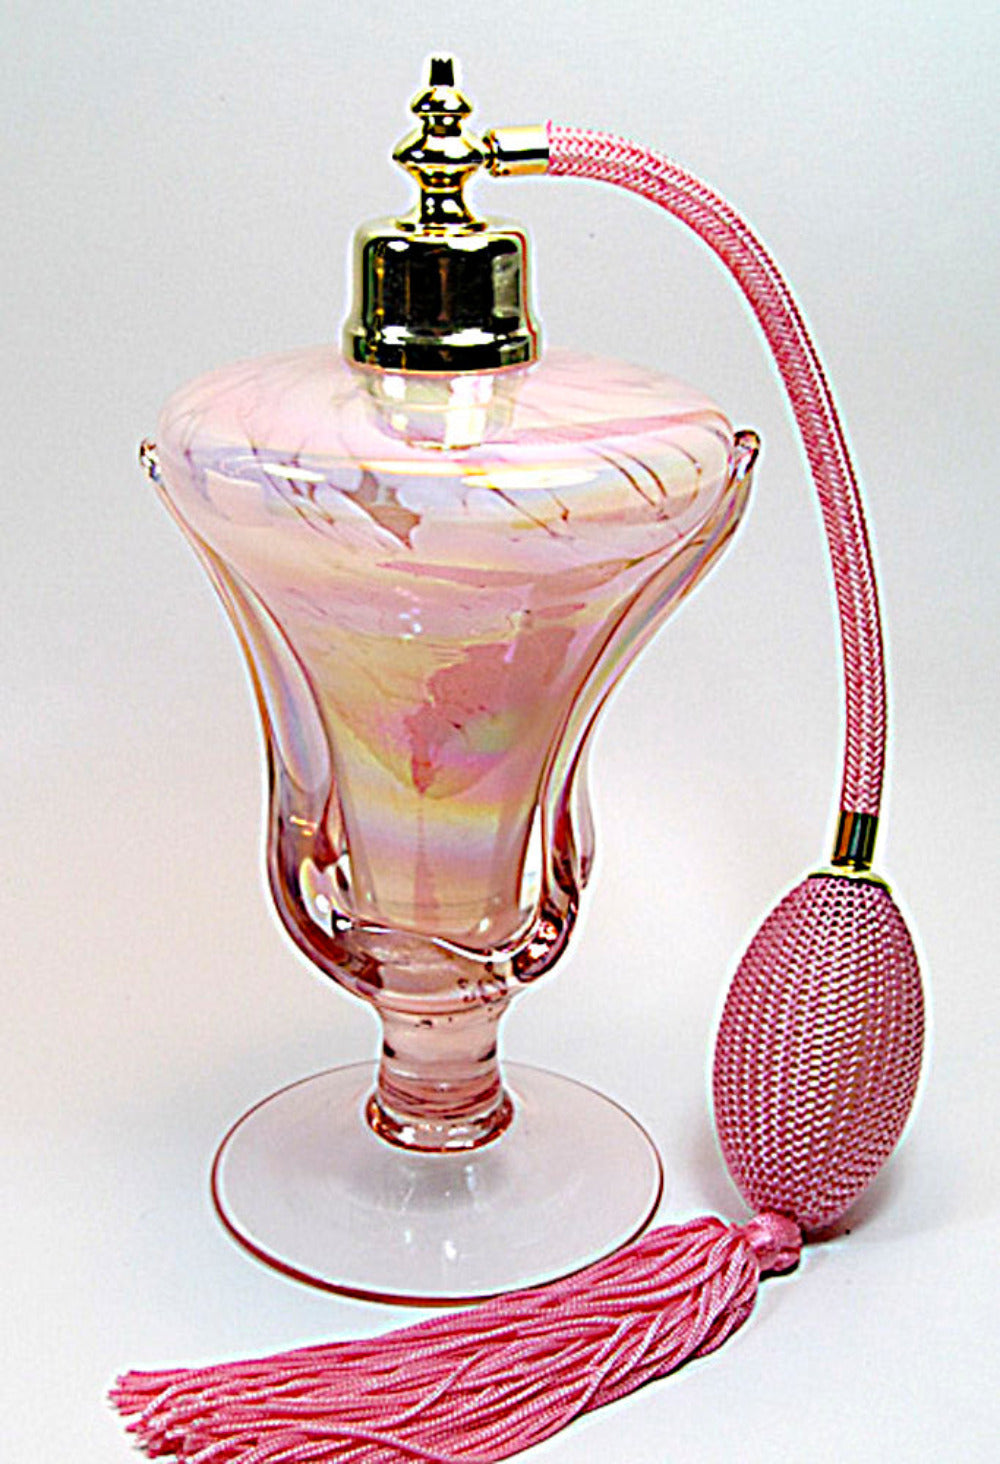 Art perfume atomizer bottles